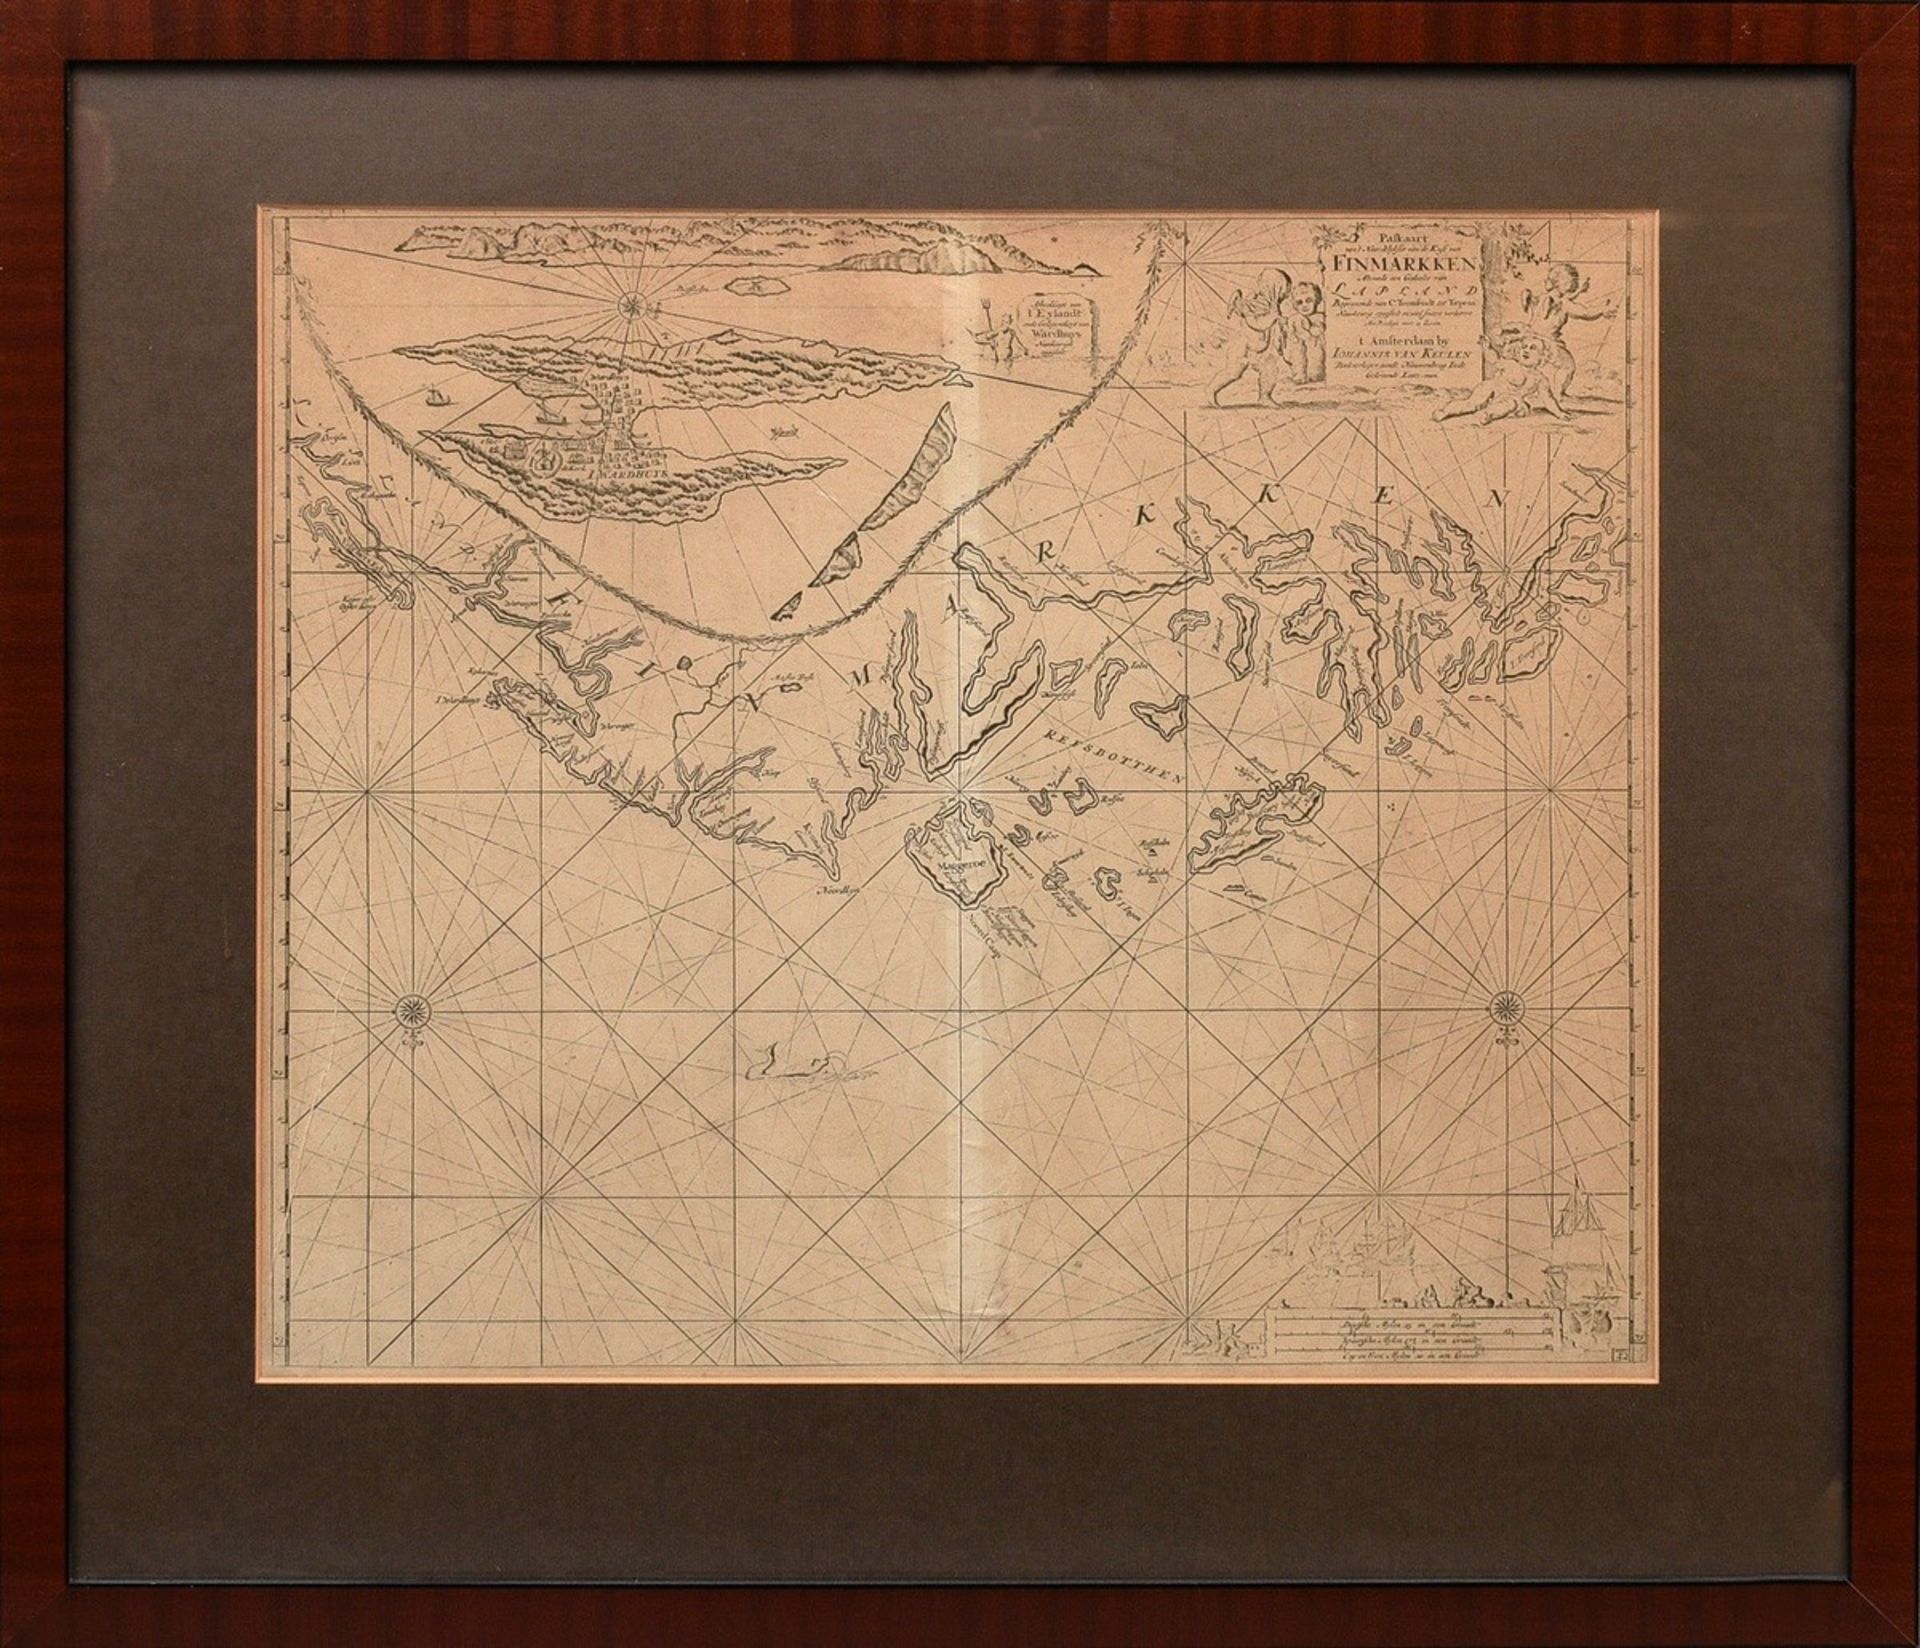 Keulen, Johannes van (1654-1715) ‘Paskaart vant Noordelykste van de kust van Finmarken ... Lapland’ - Image 2 of 6